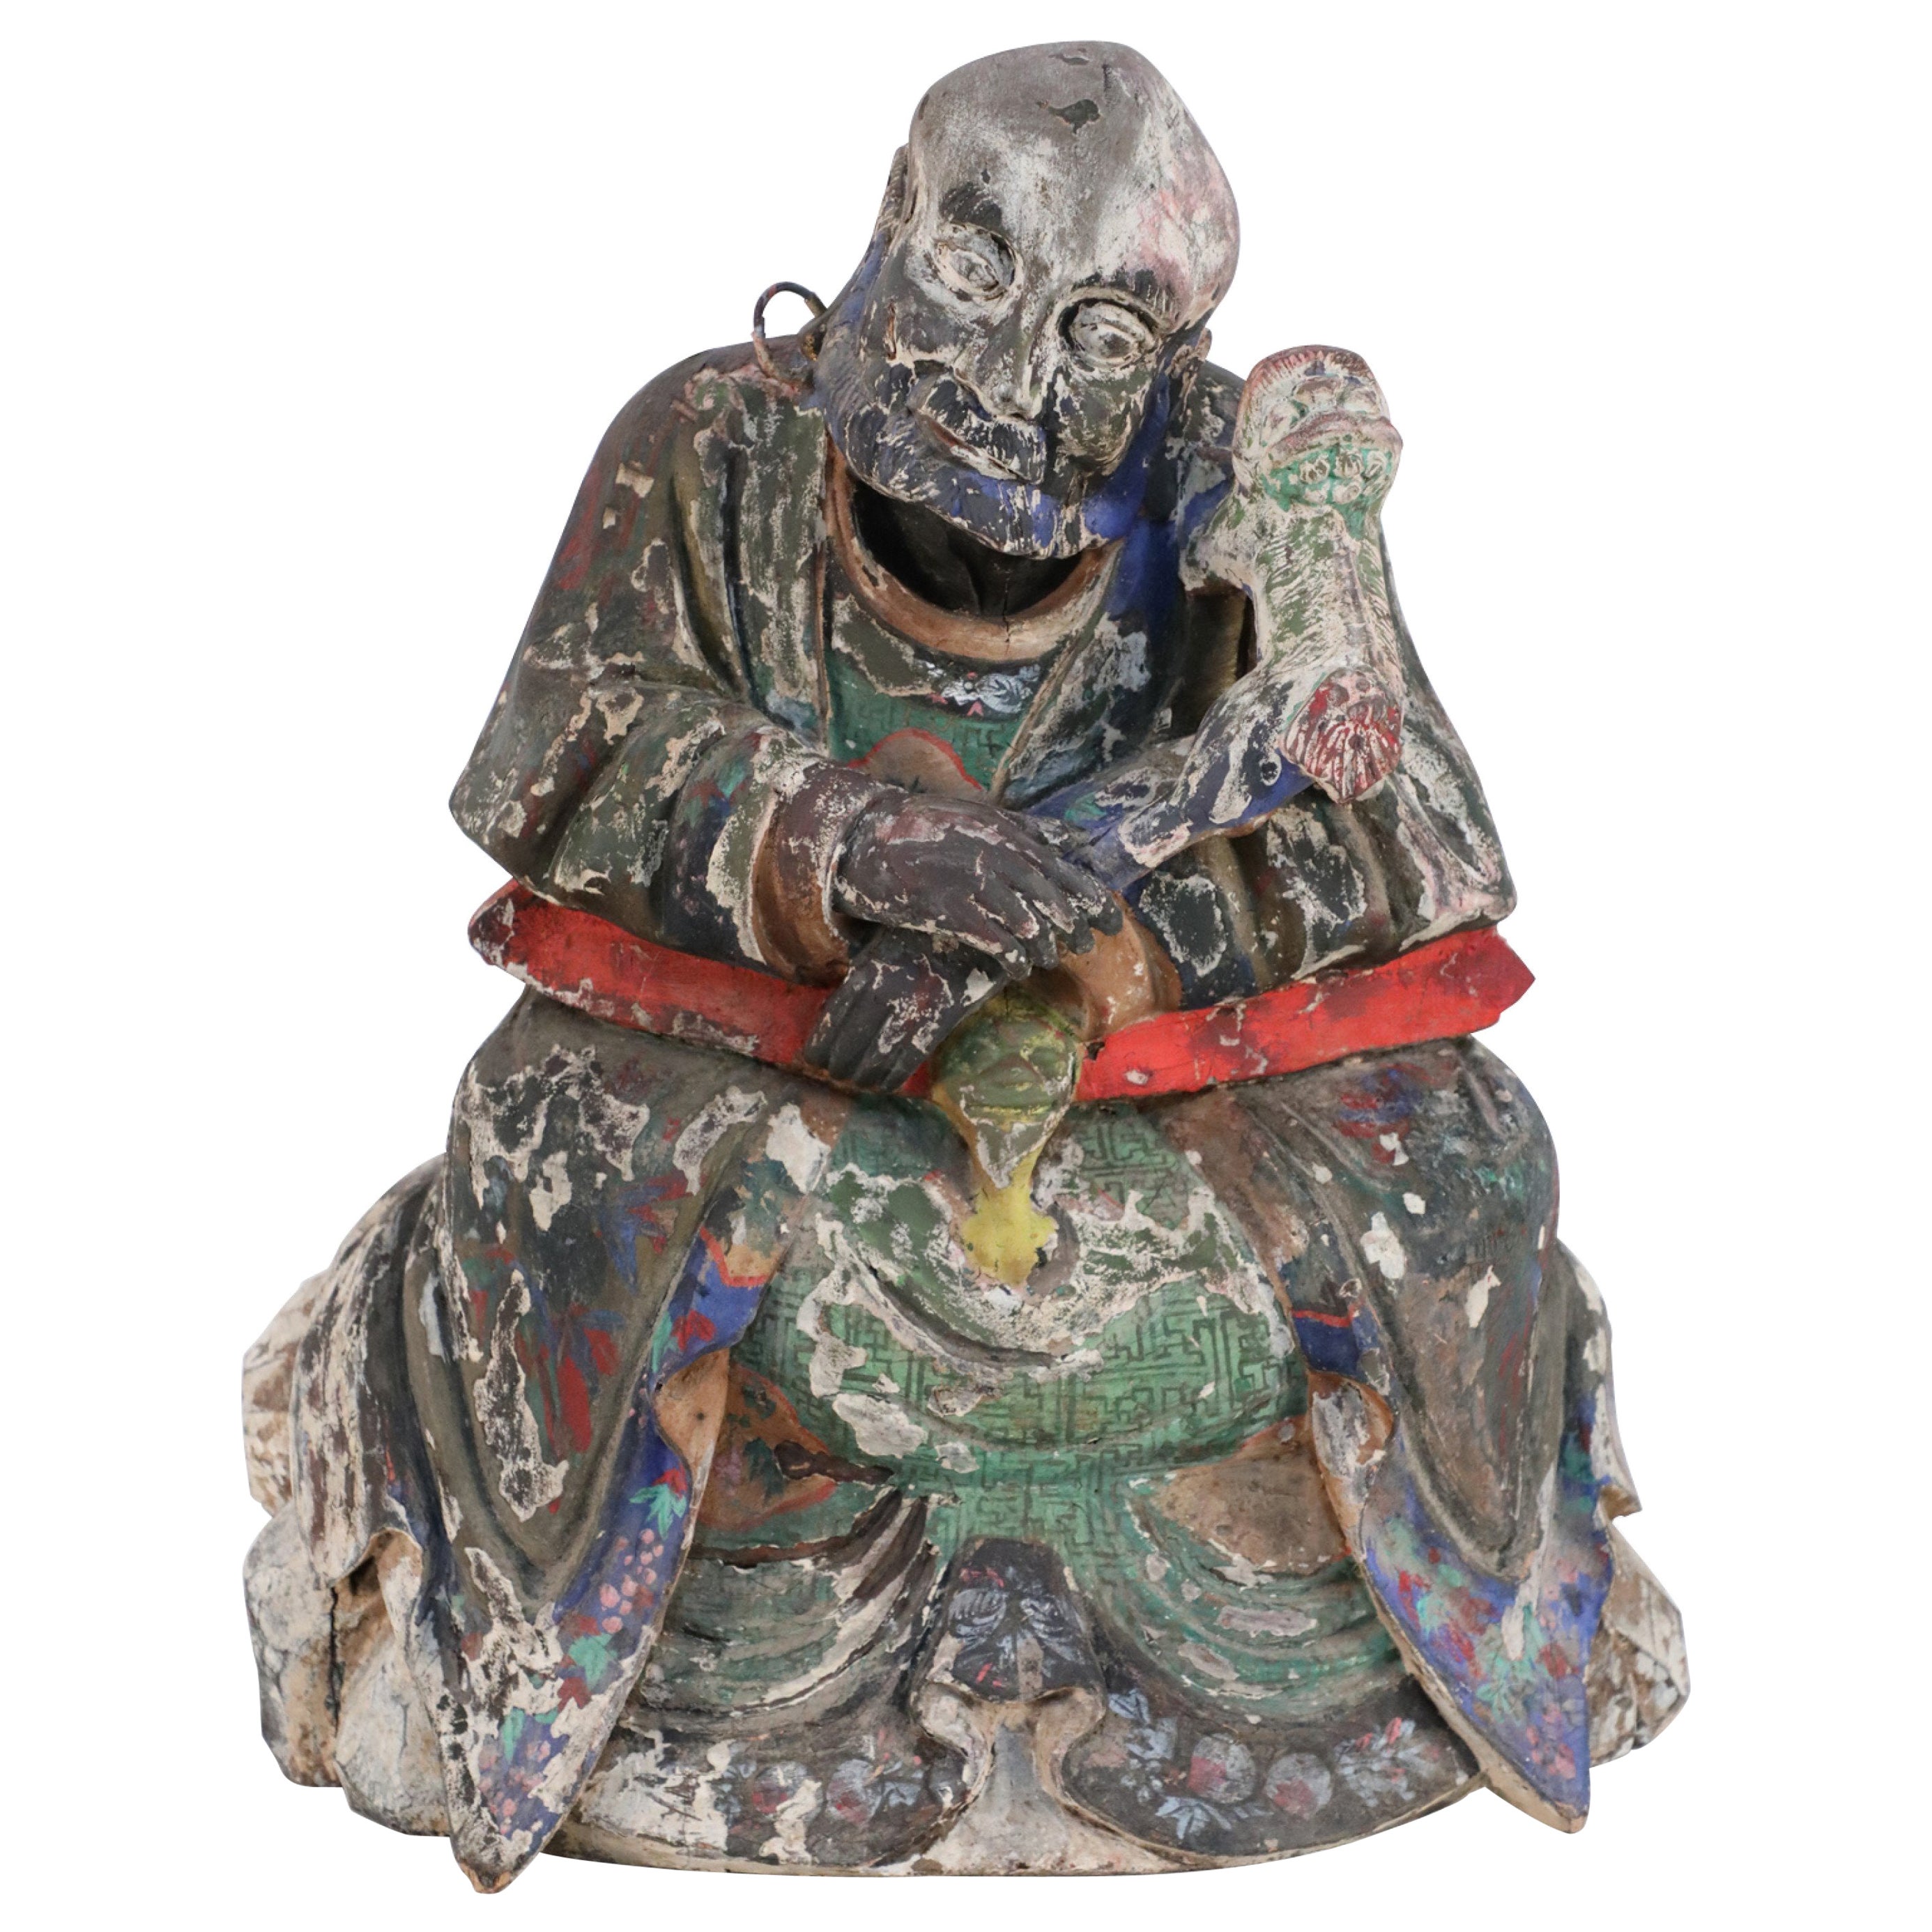 Ancienne statue de Bouddha chinoise en argile peinte